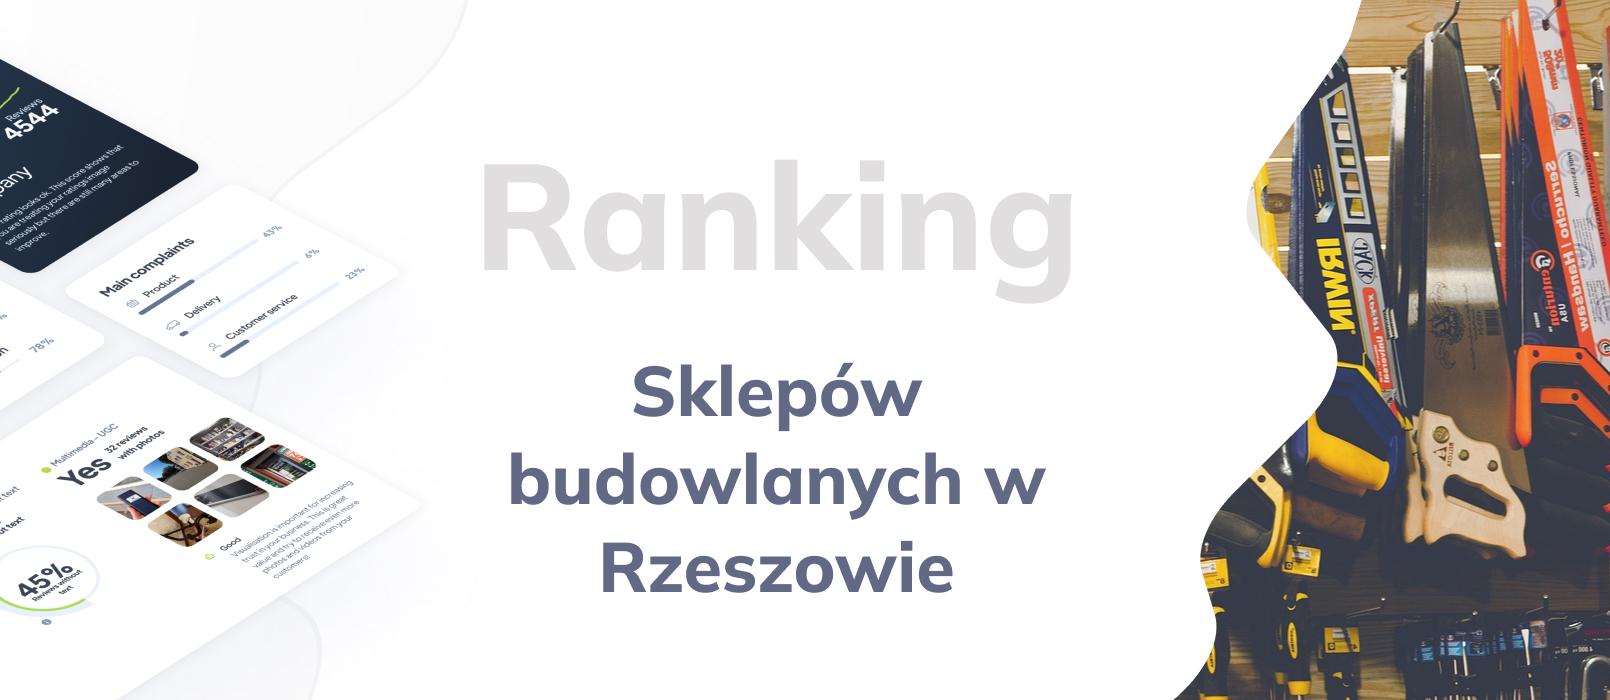 Najlepsze sklepy budowlane w Rzeszowie - TOP 10